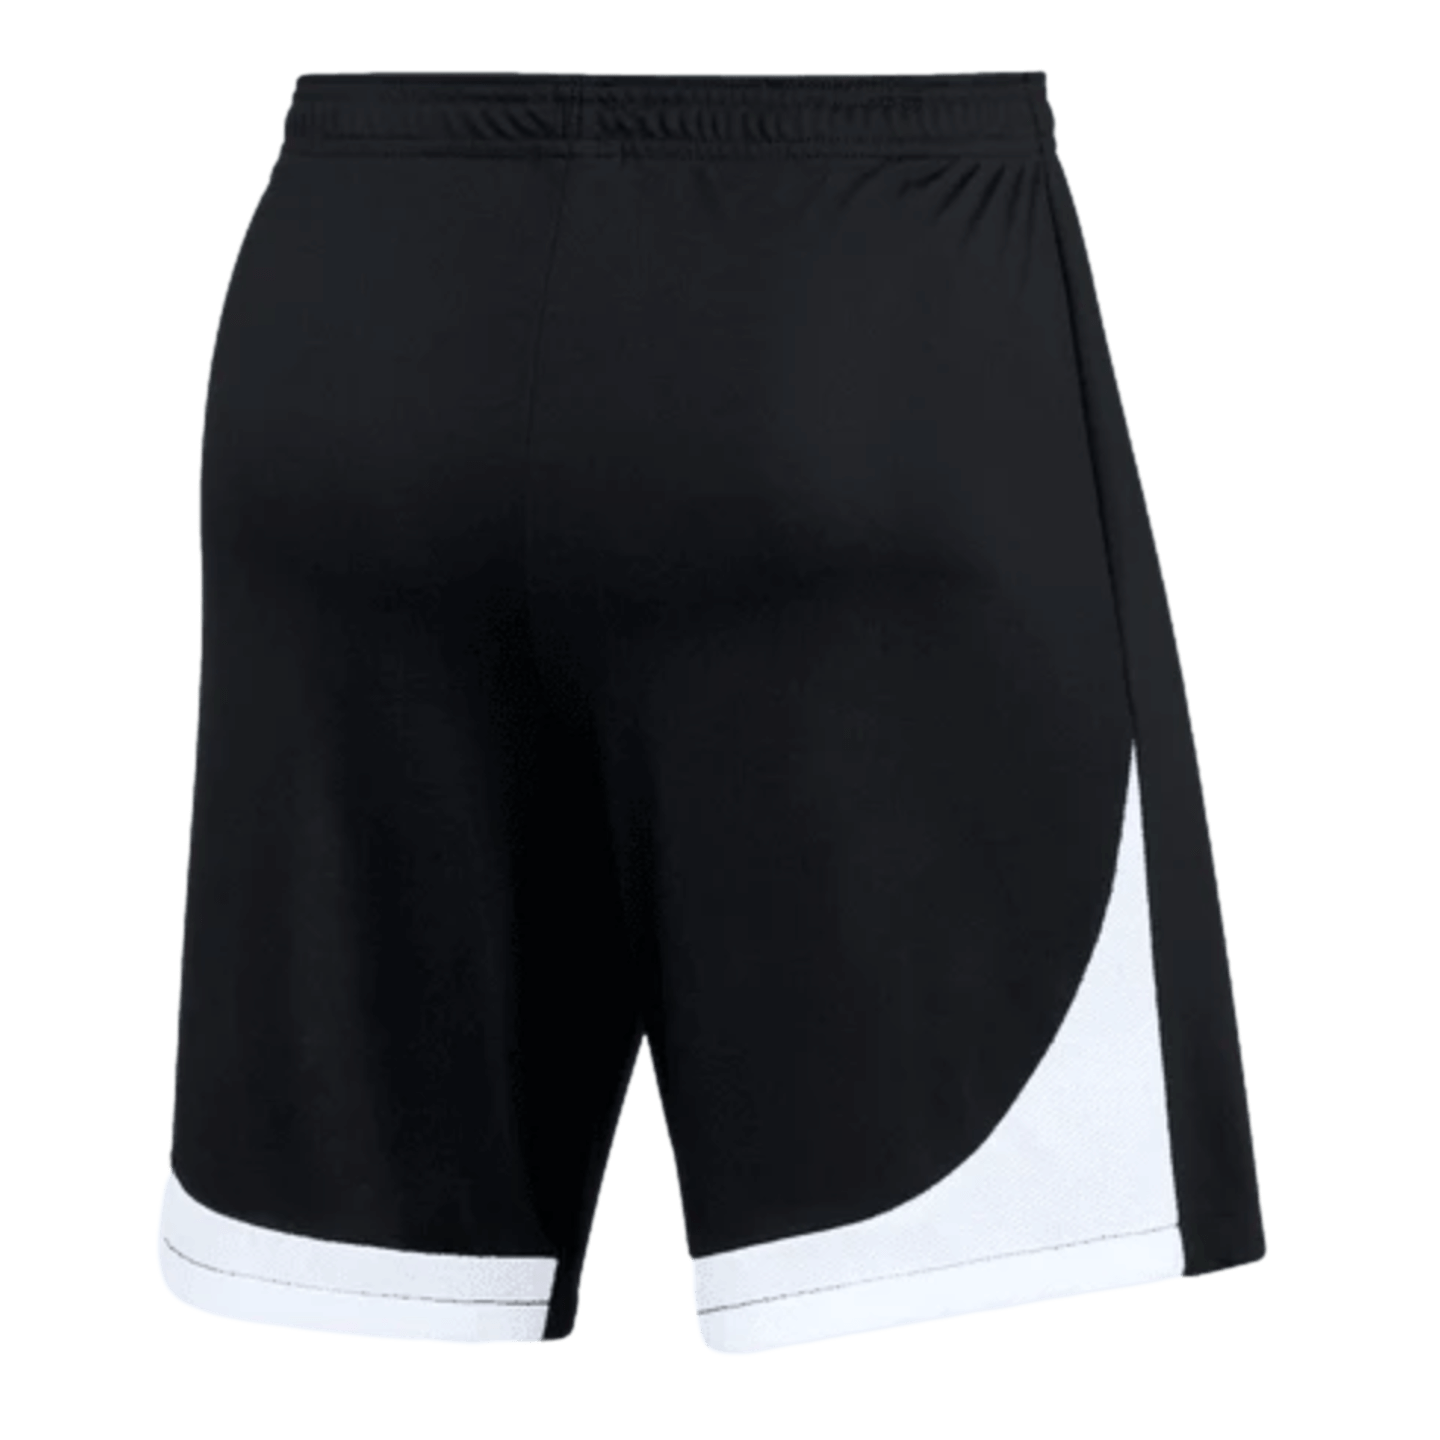 Nike Dri-FIT Womens Knit Shorts